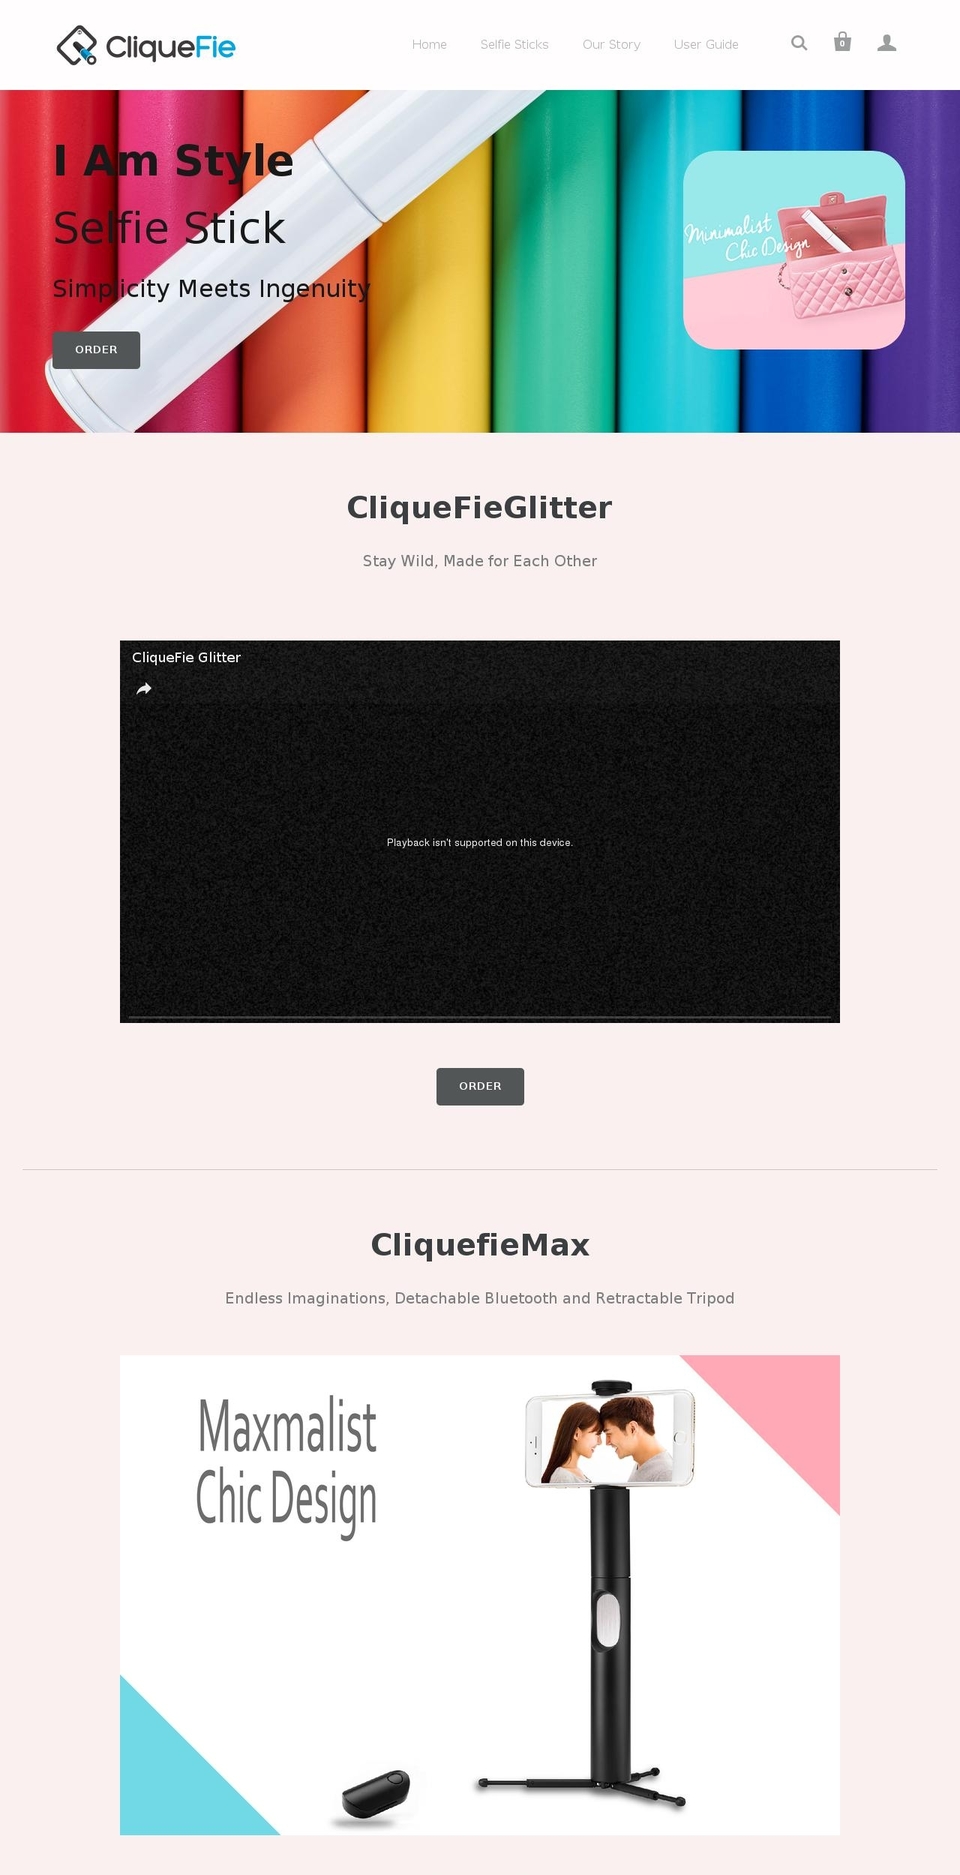 cliquefie.com shopify website screenshot